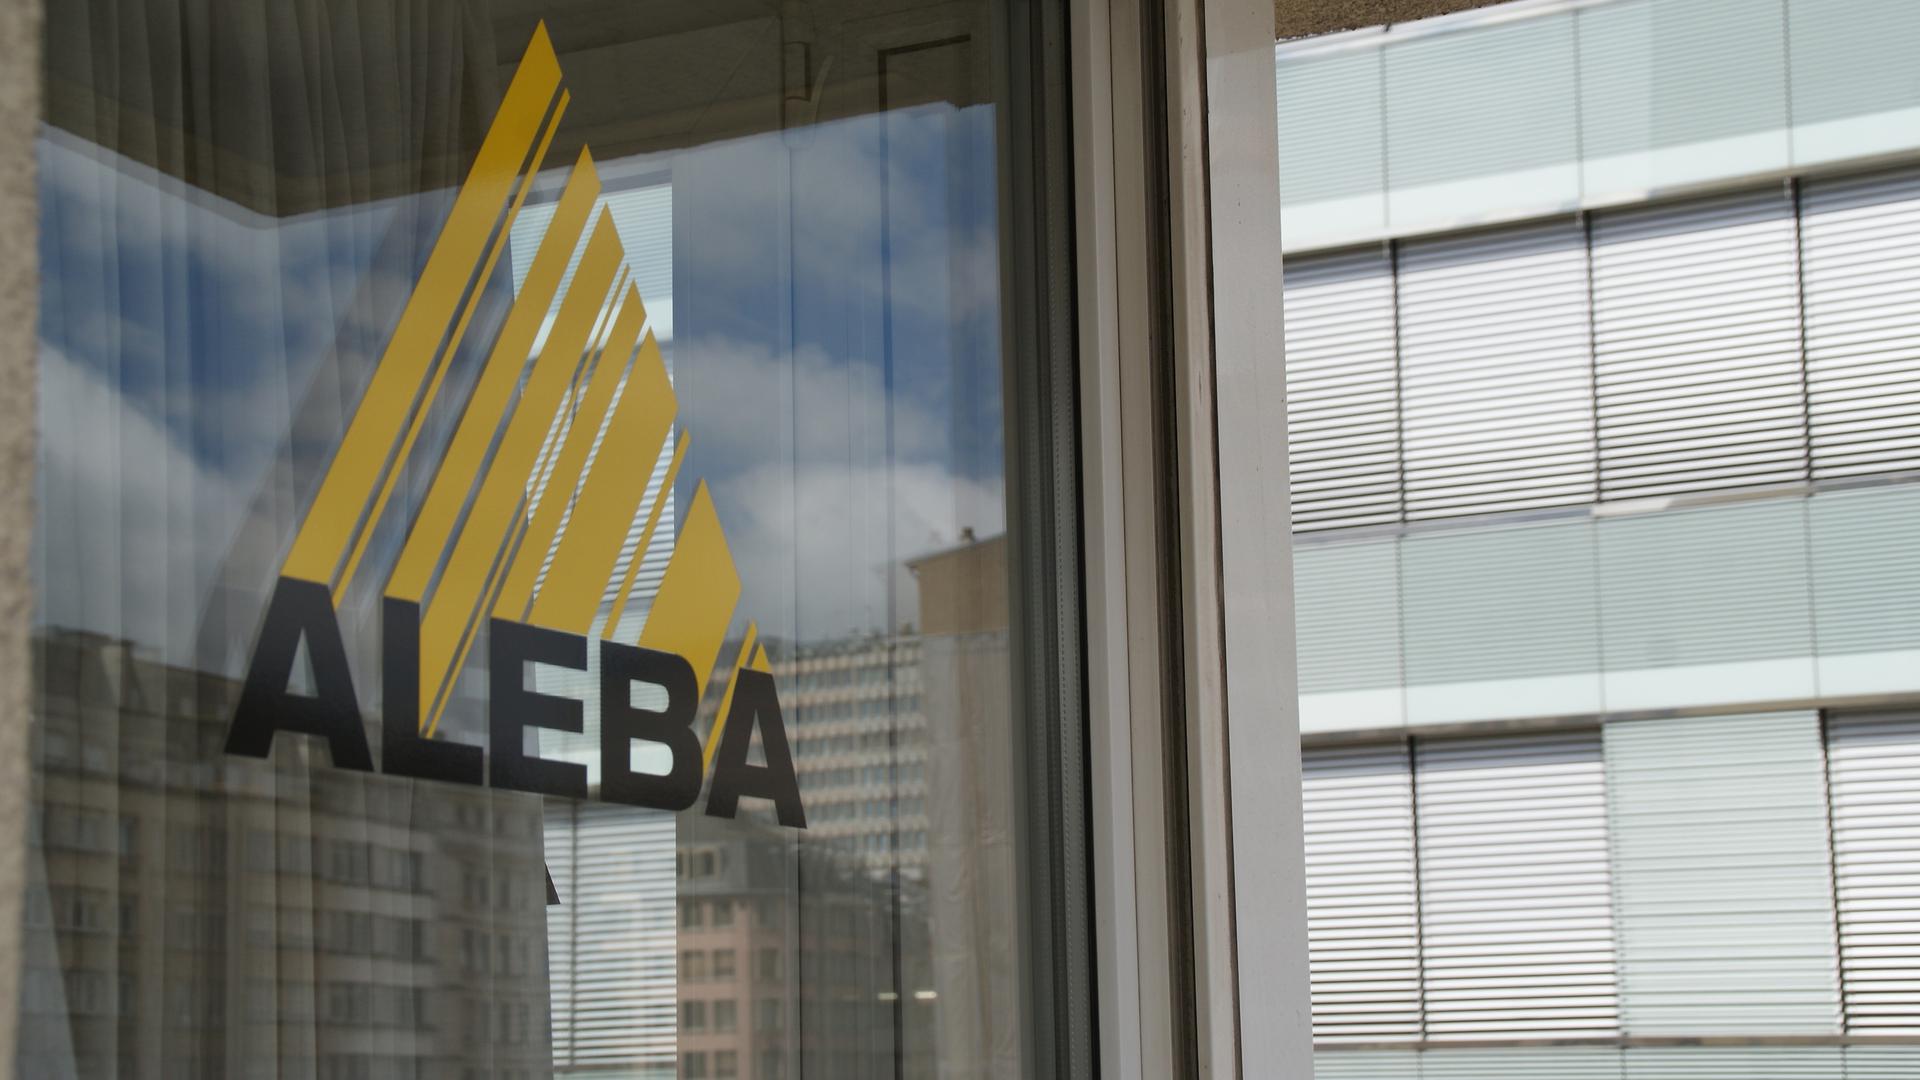 L'Aleba compte plus de 10.000 membres et dispose de 700 délégués du personnel.